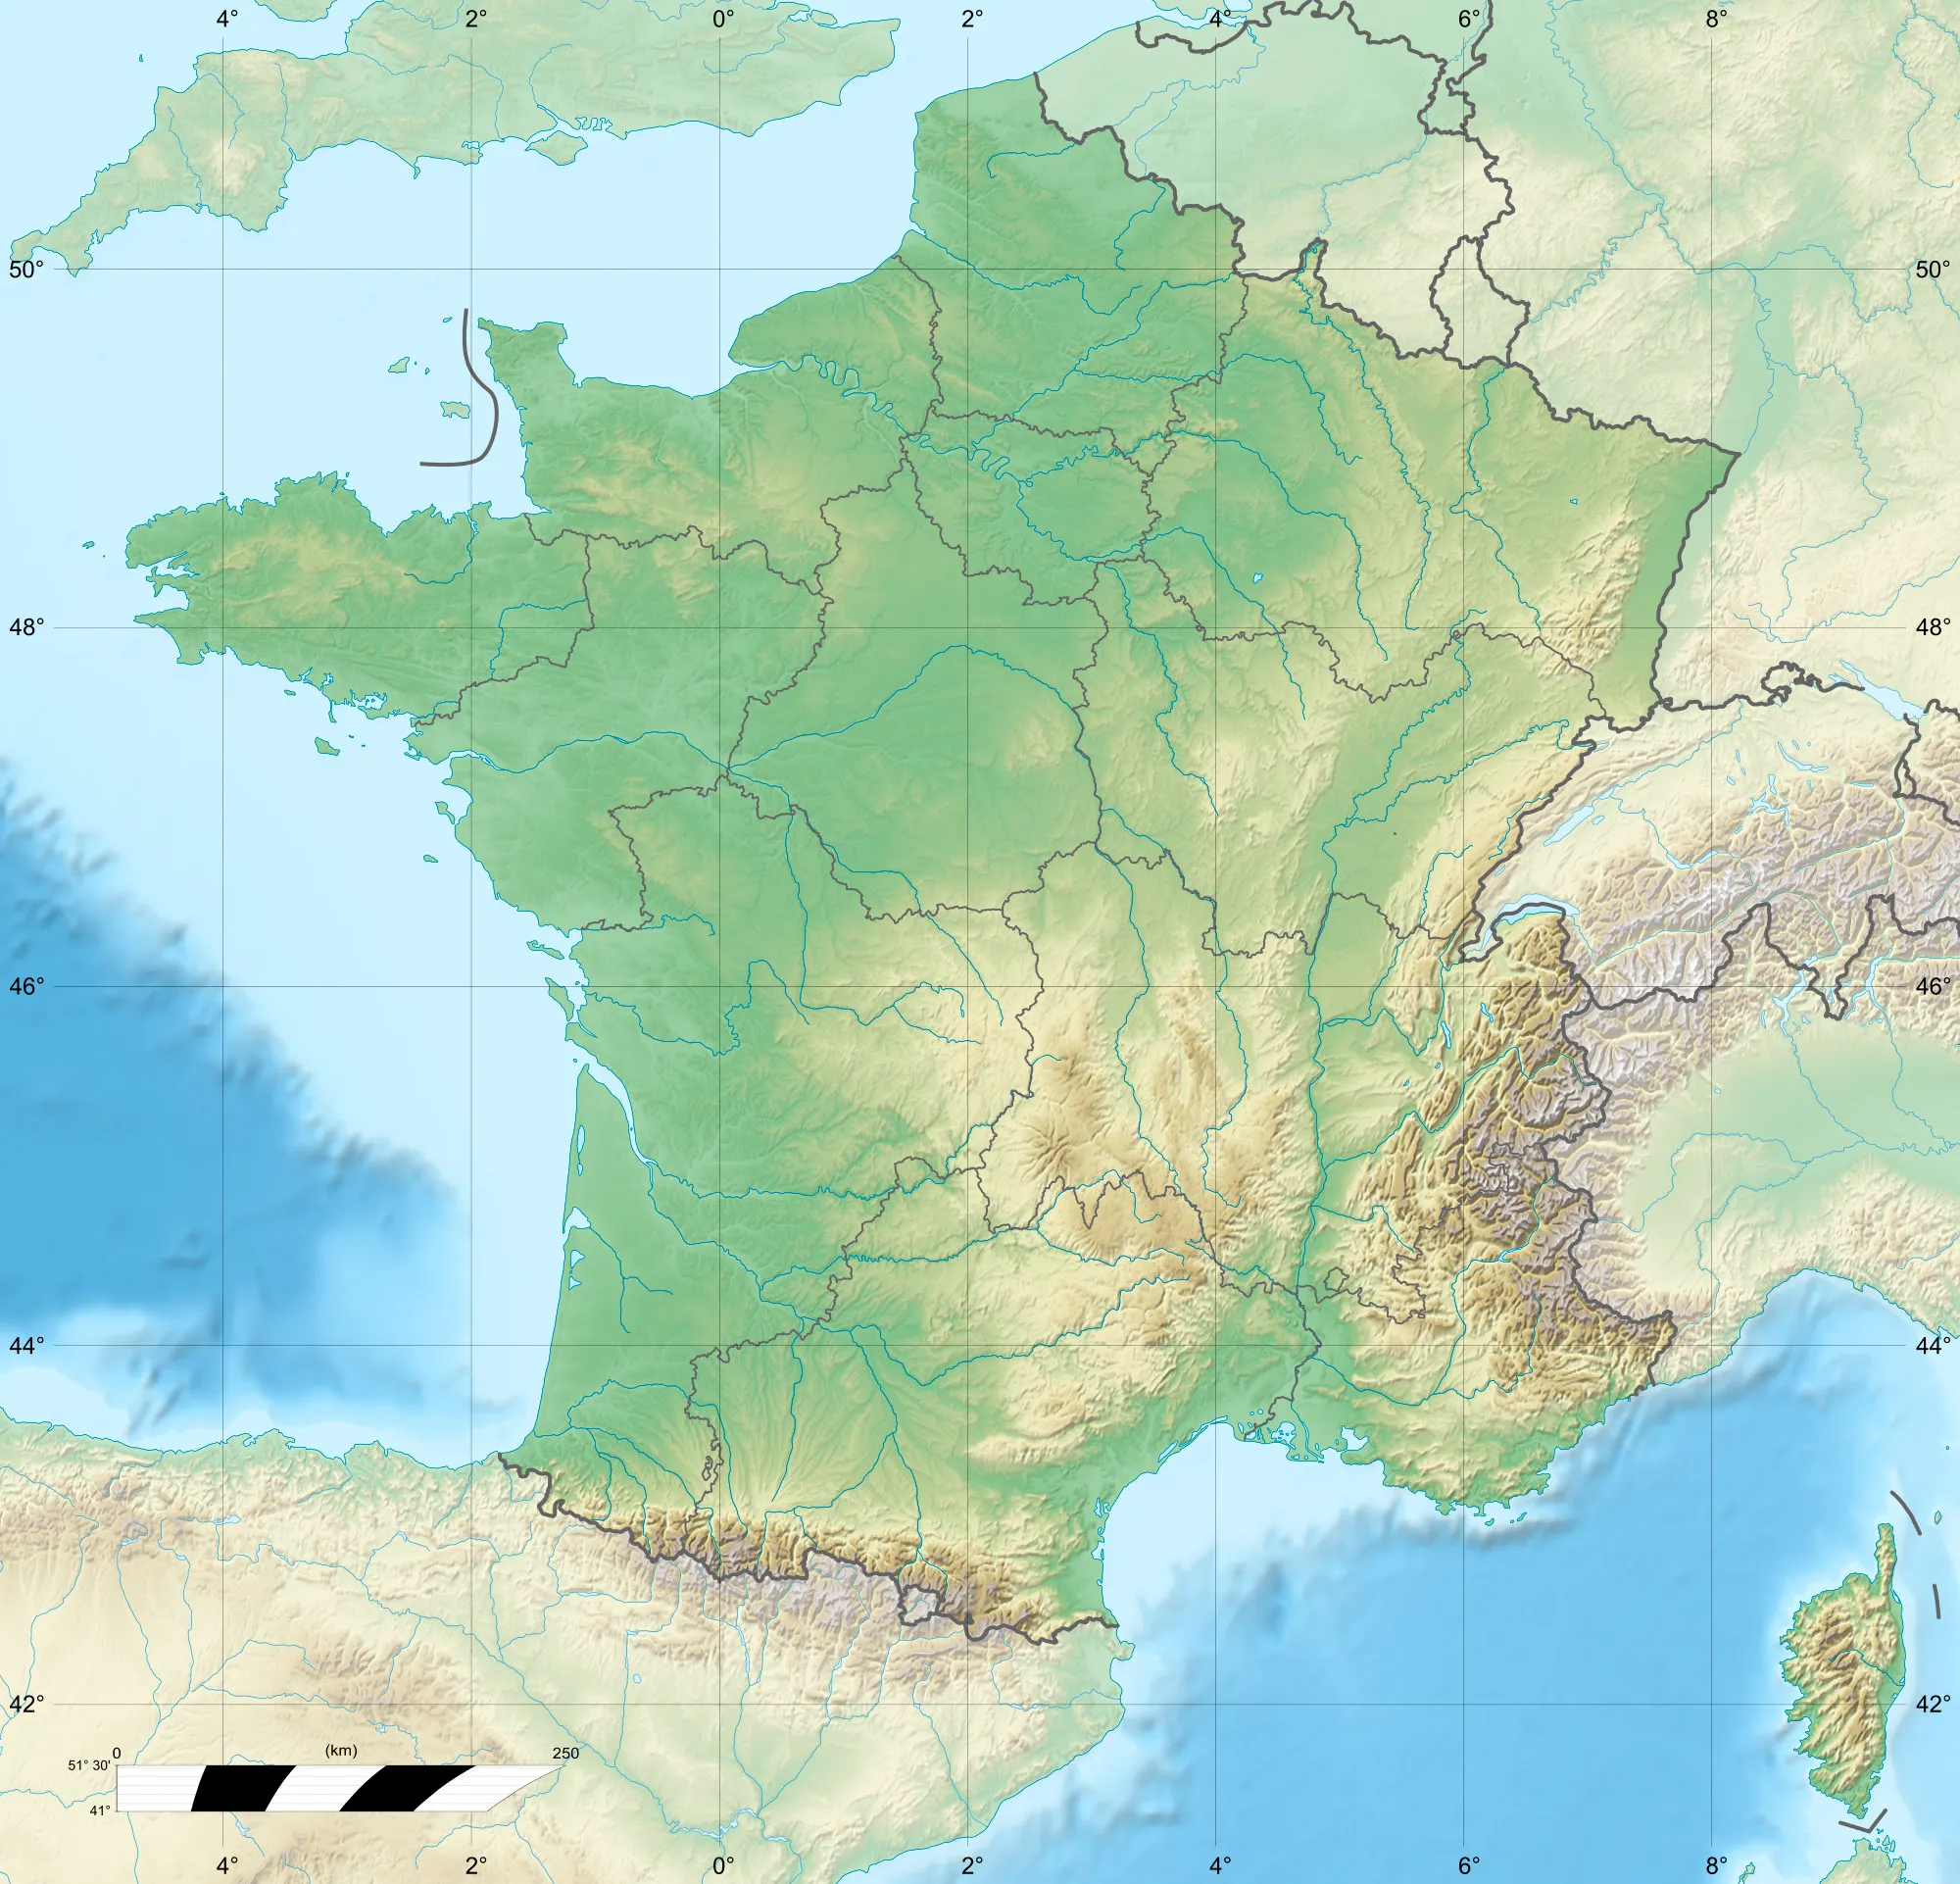 Image of Poitou-Charentes